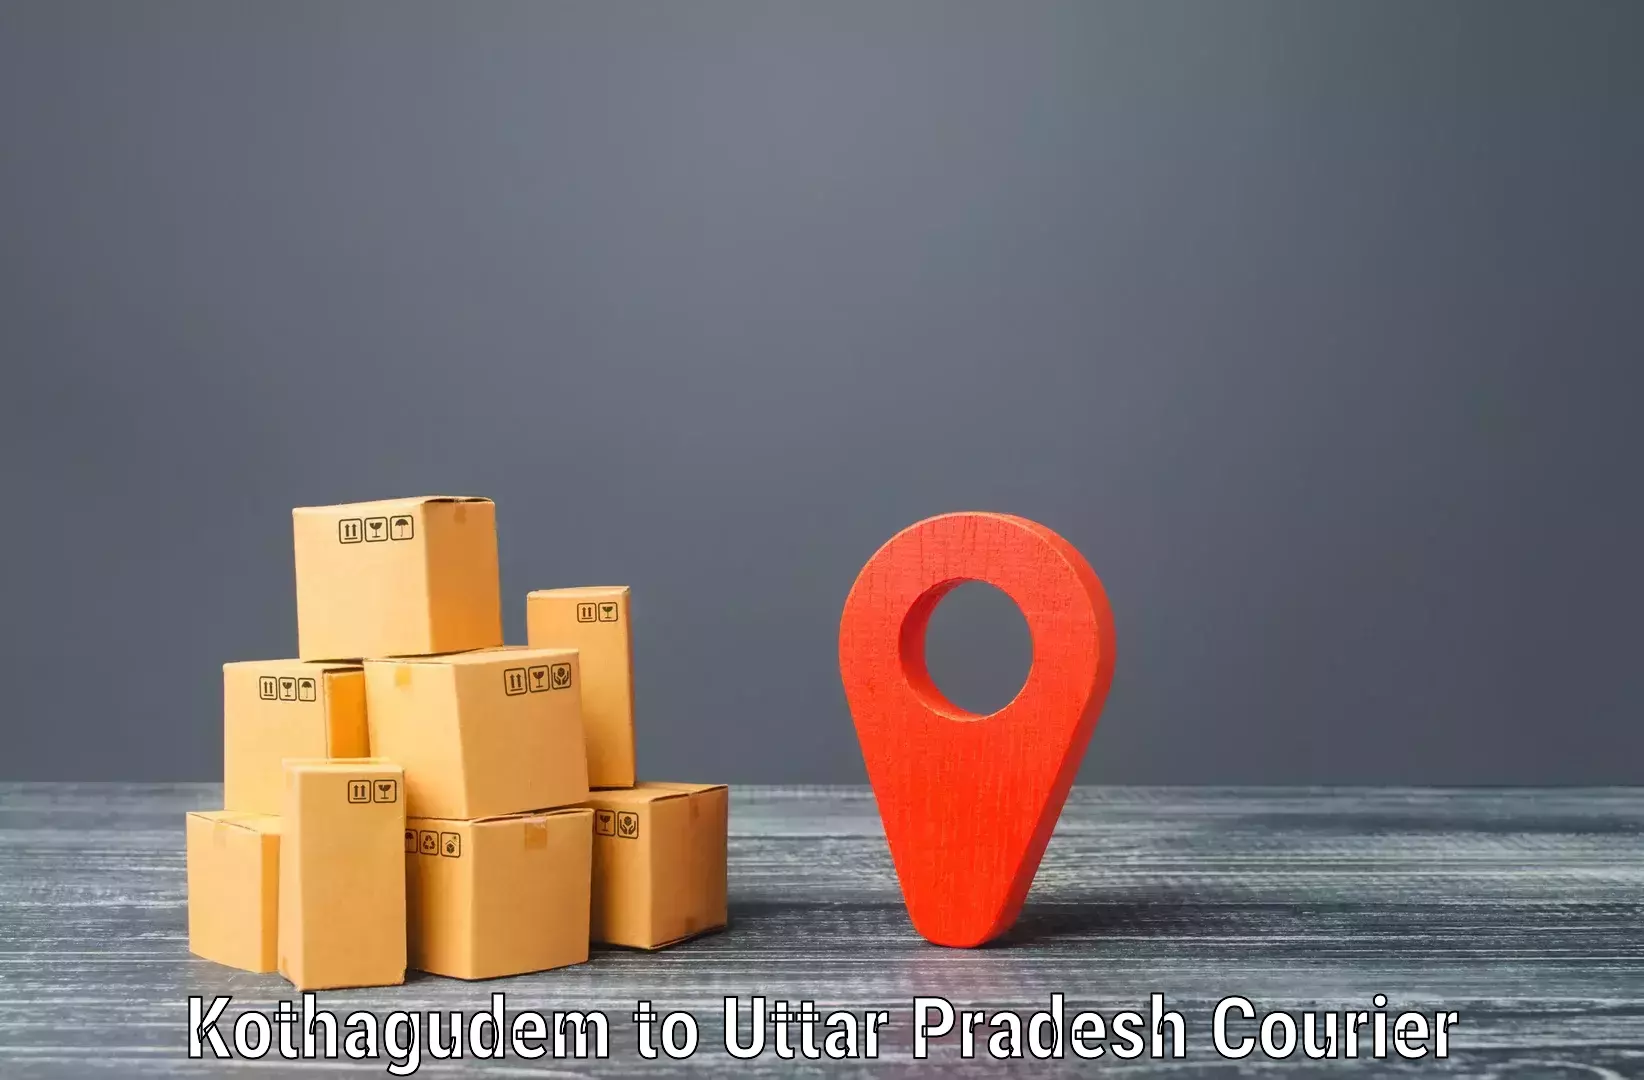 Next-generation courier services Kothagudem to Gosainganj